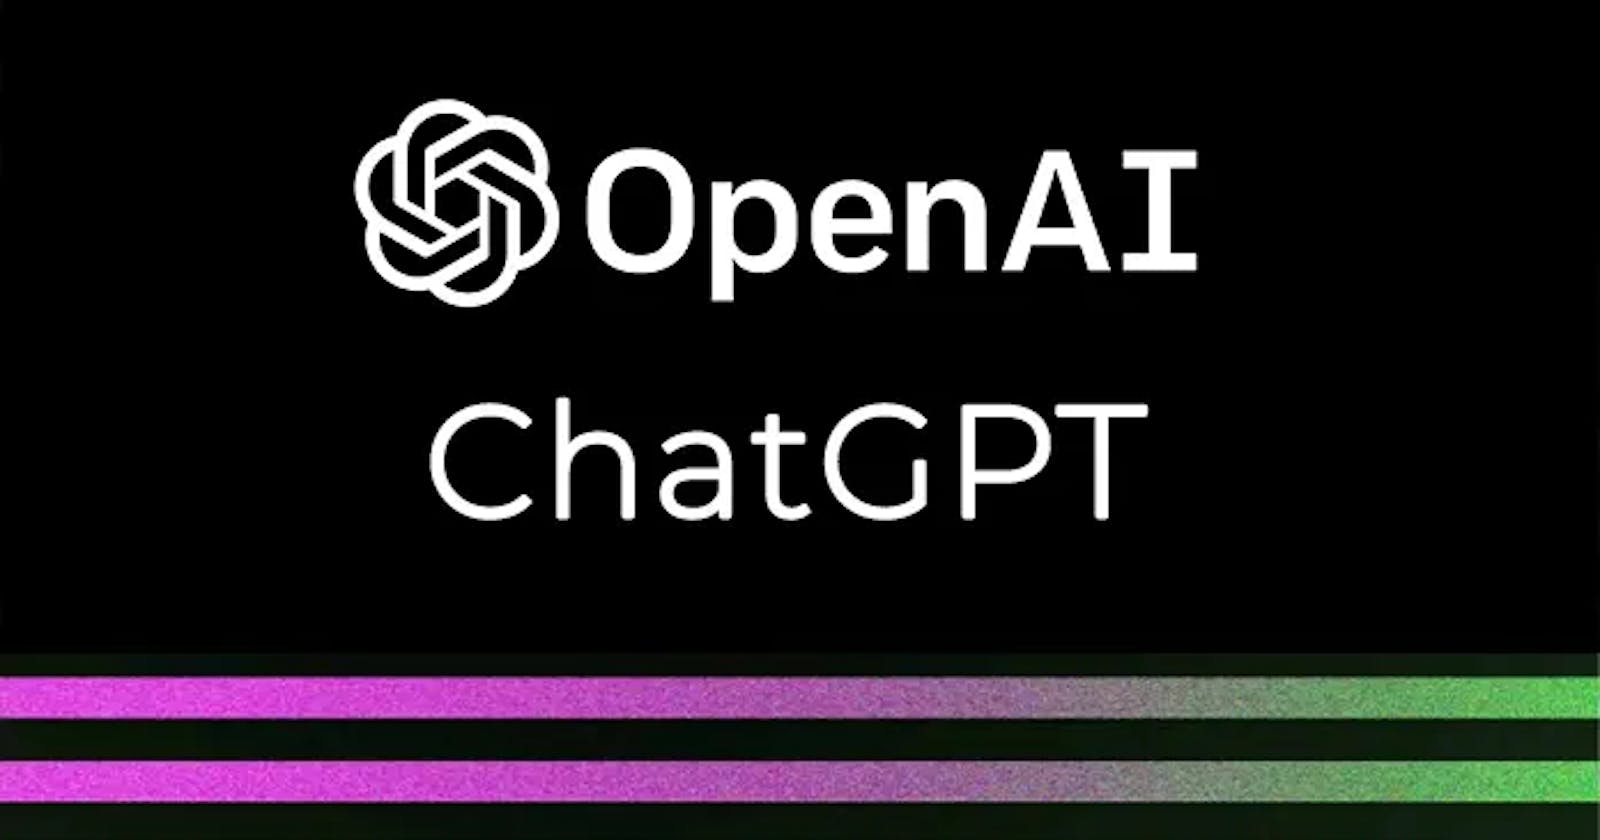 Chat GPT : An OpenAI Language Model